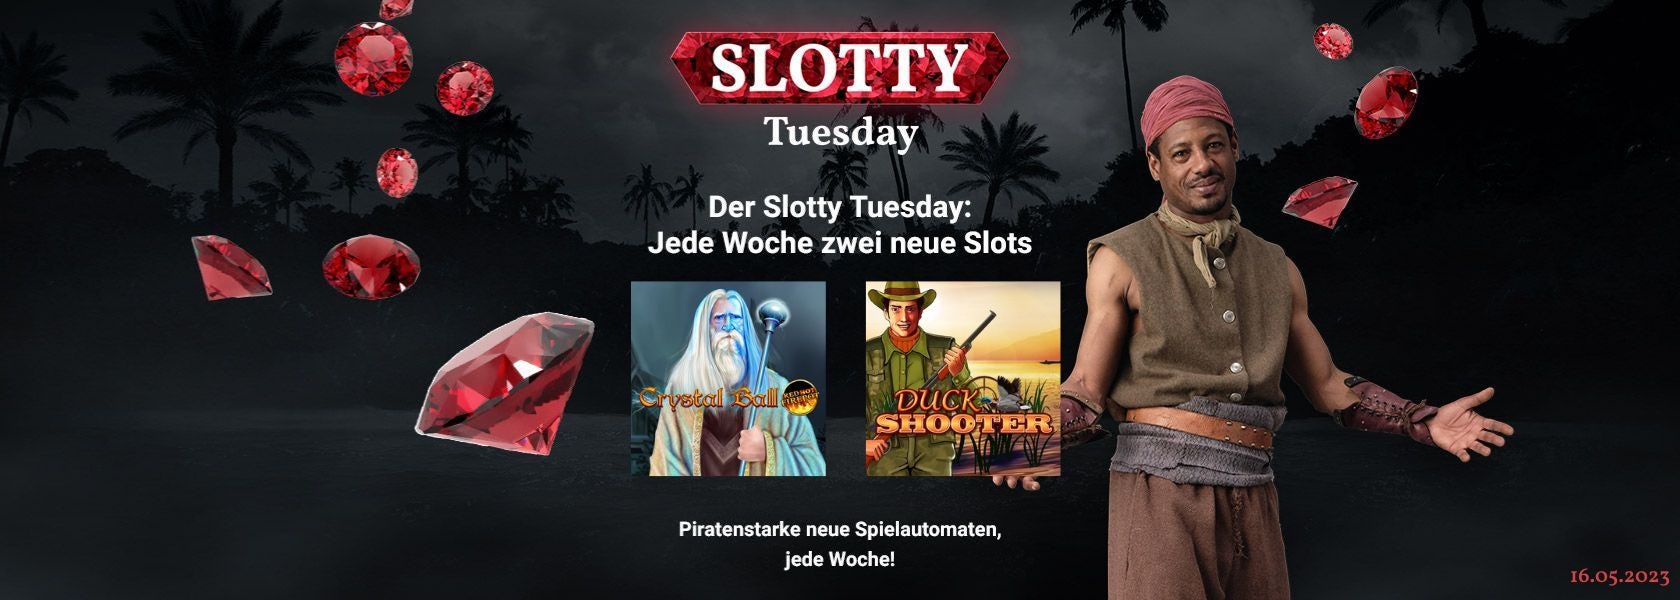 JPI-Header-Slotty-Tuesday-1605